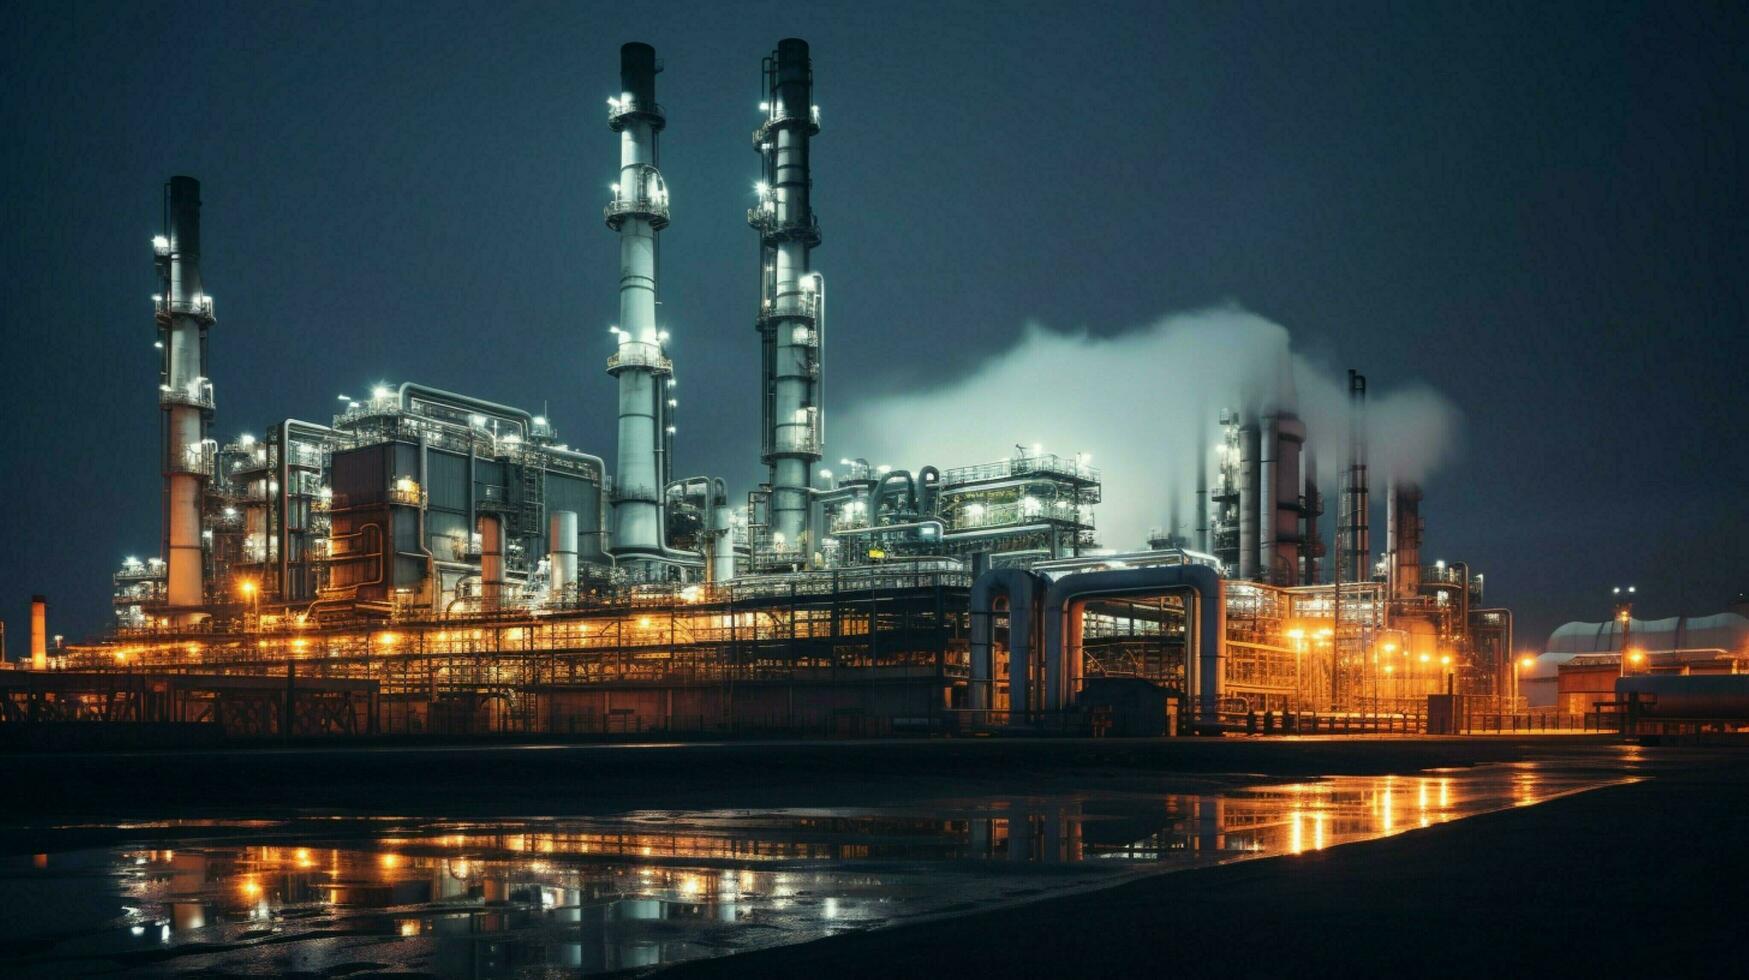 Treibstoff Raffinerie beleuchtet beim Nacht mit Pipelines foto